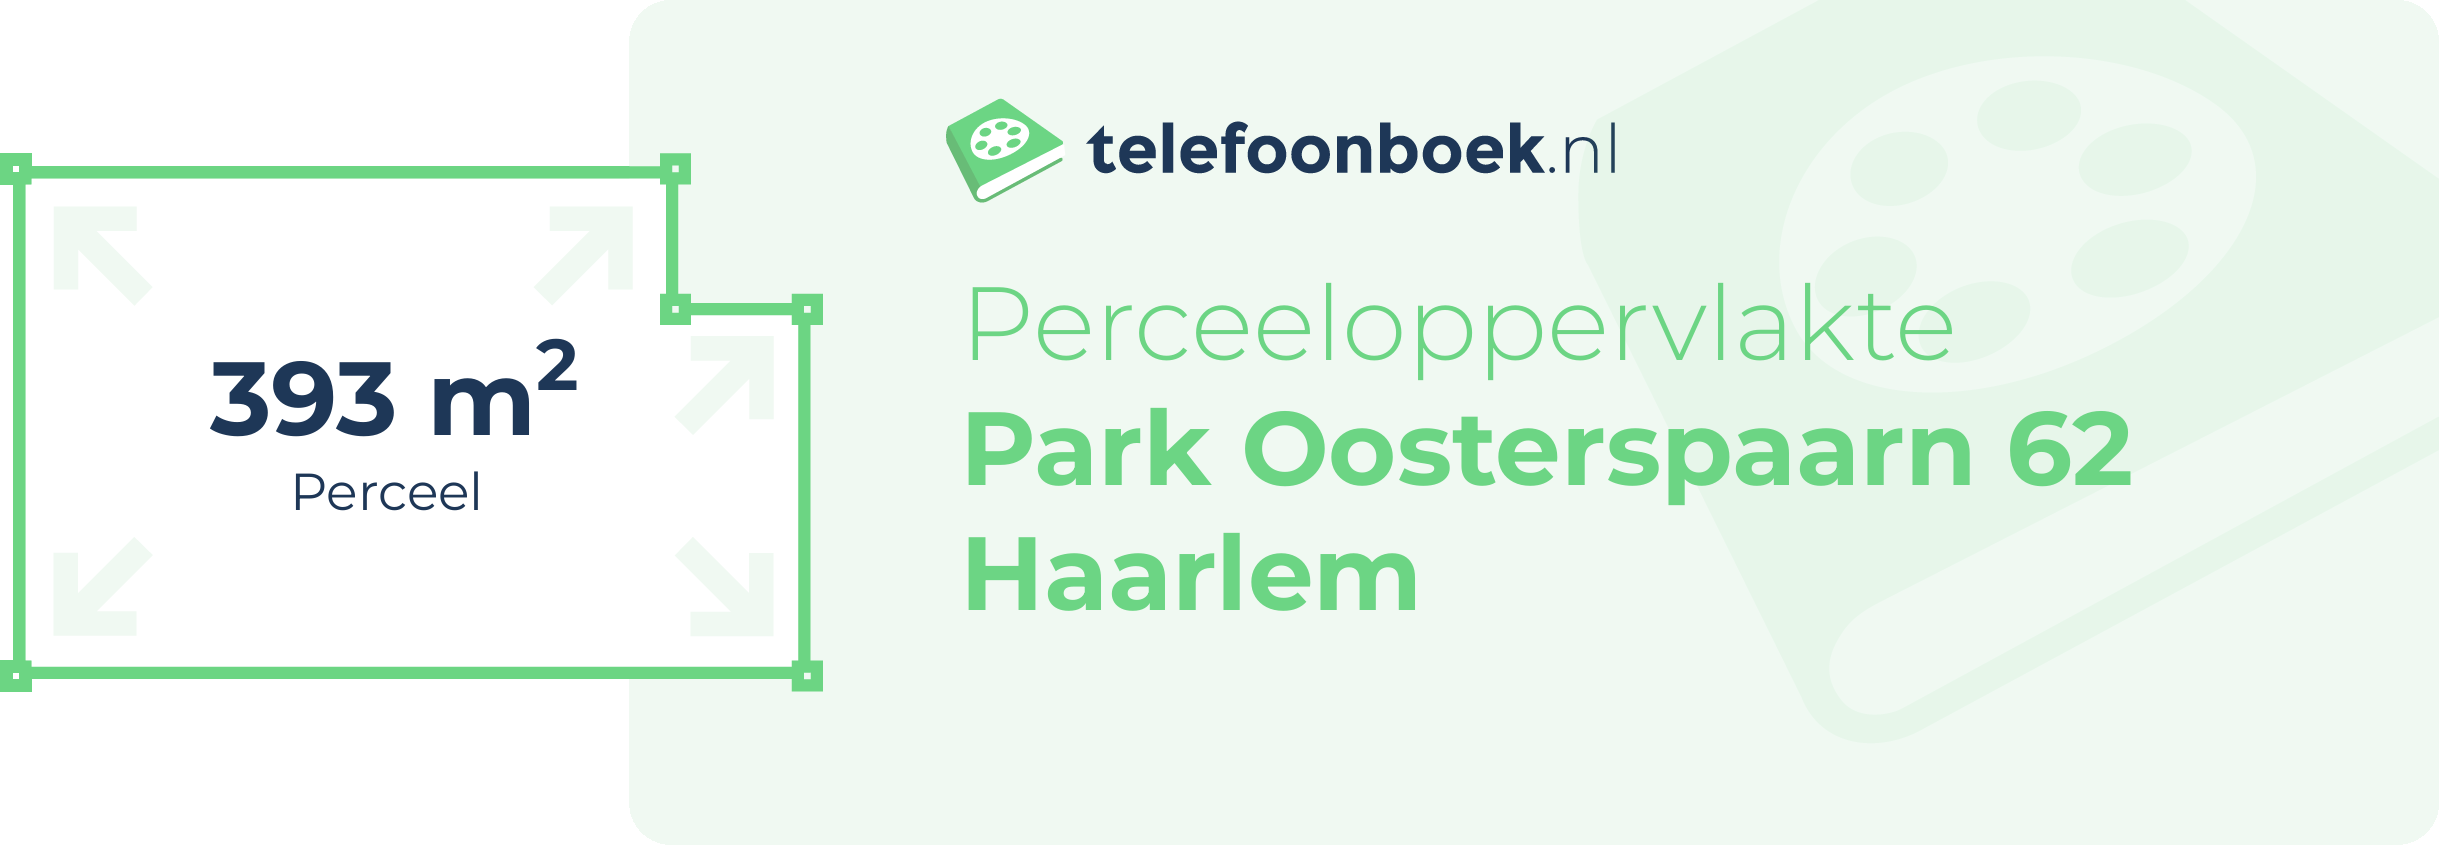 Perceeloppervlakte Park Oosterspaarn 62 Haarlem